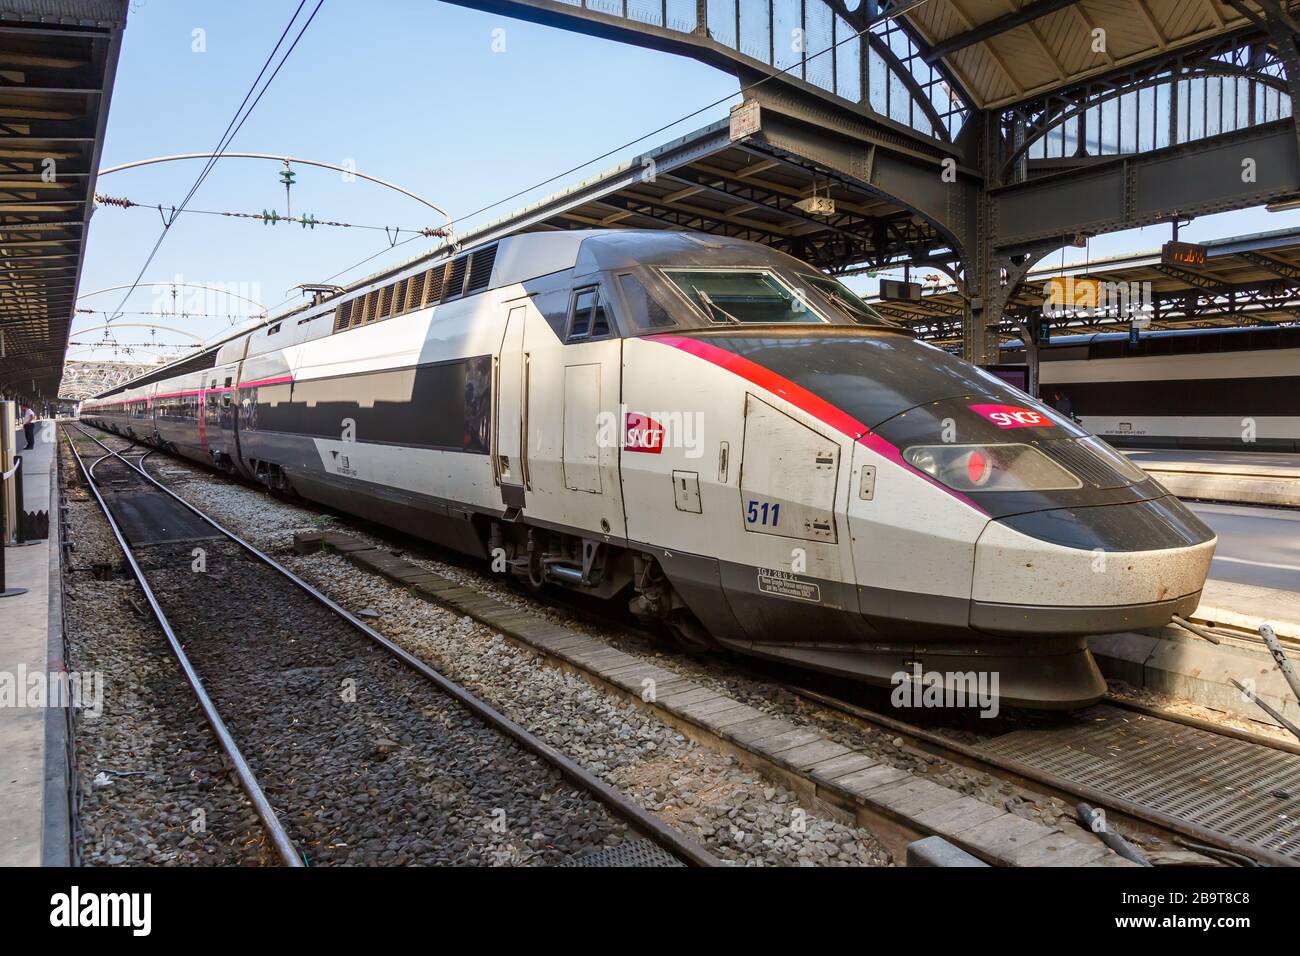 París, Francia – 23 de julio de 2019: Tren francés TGV de alta velocidad estación de tren Paris Est en Francia. Foto de stock